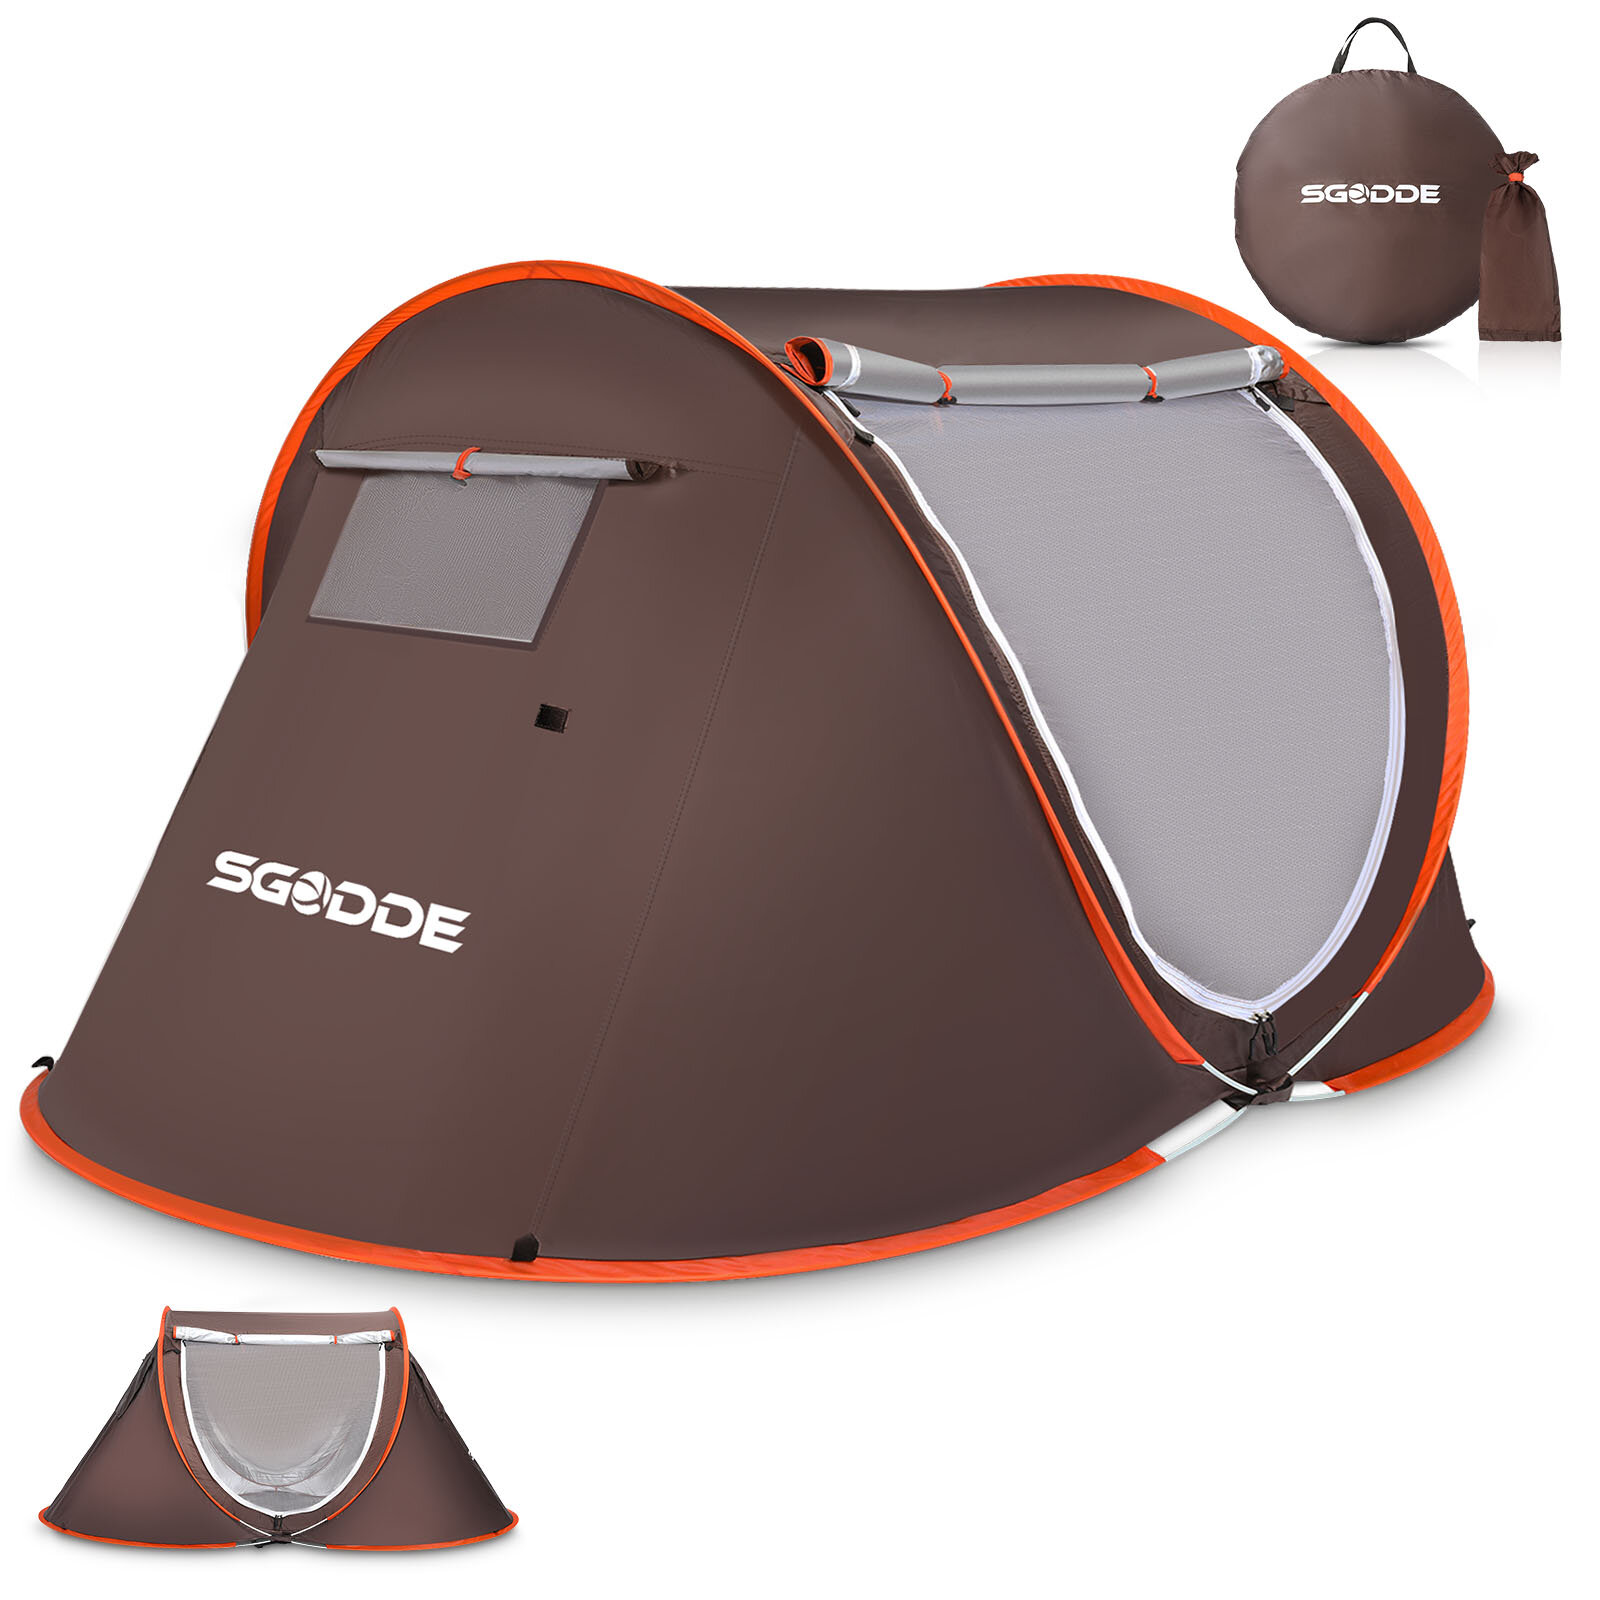 SGODDE 2-3 Personen Zelt Automatisches Campingzelt Anti UV Markisenzelt Wasserdichter Outdoor-Sonnenschutz